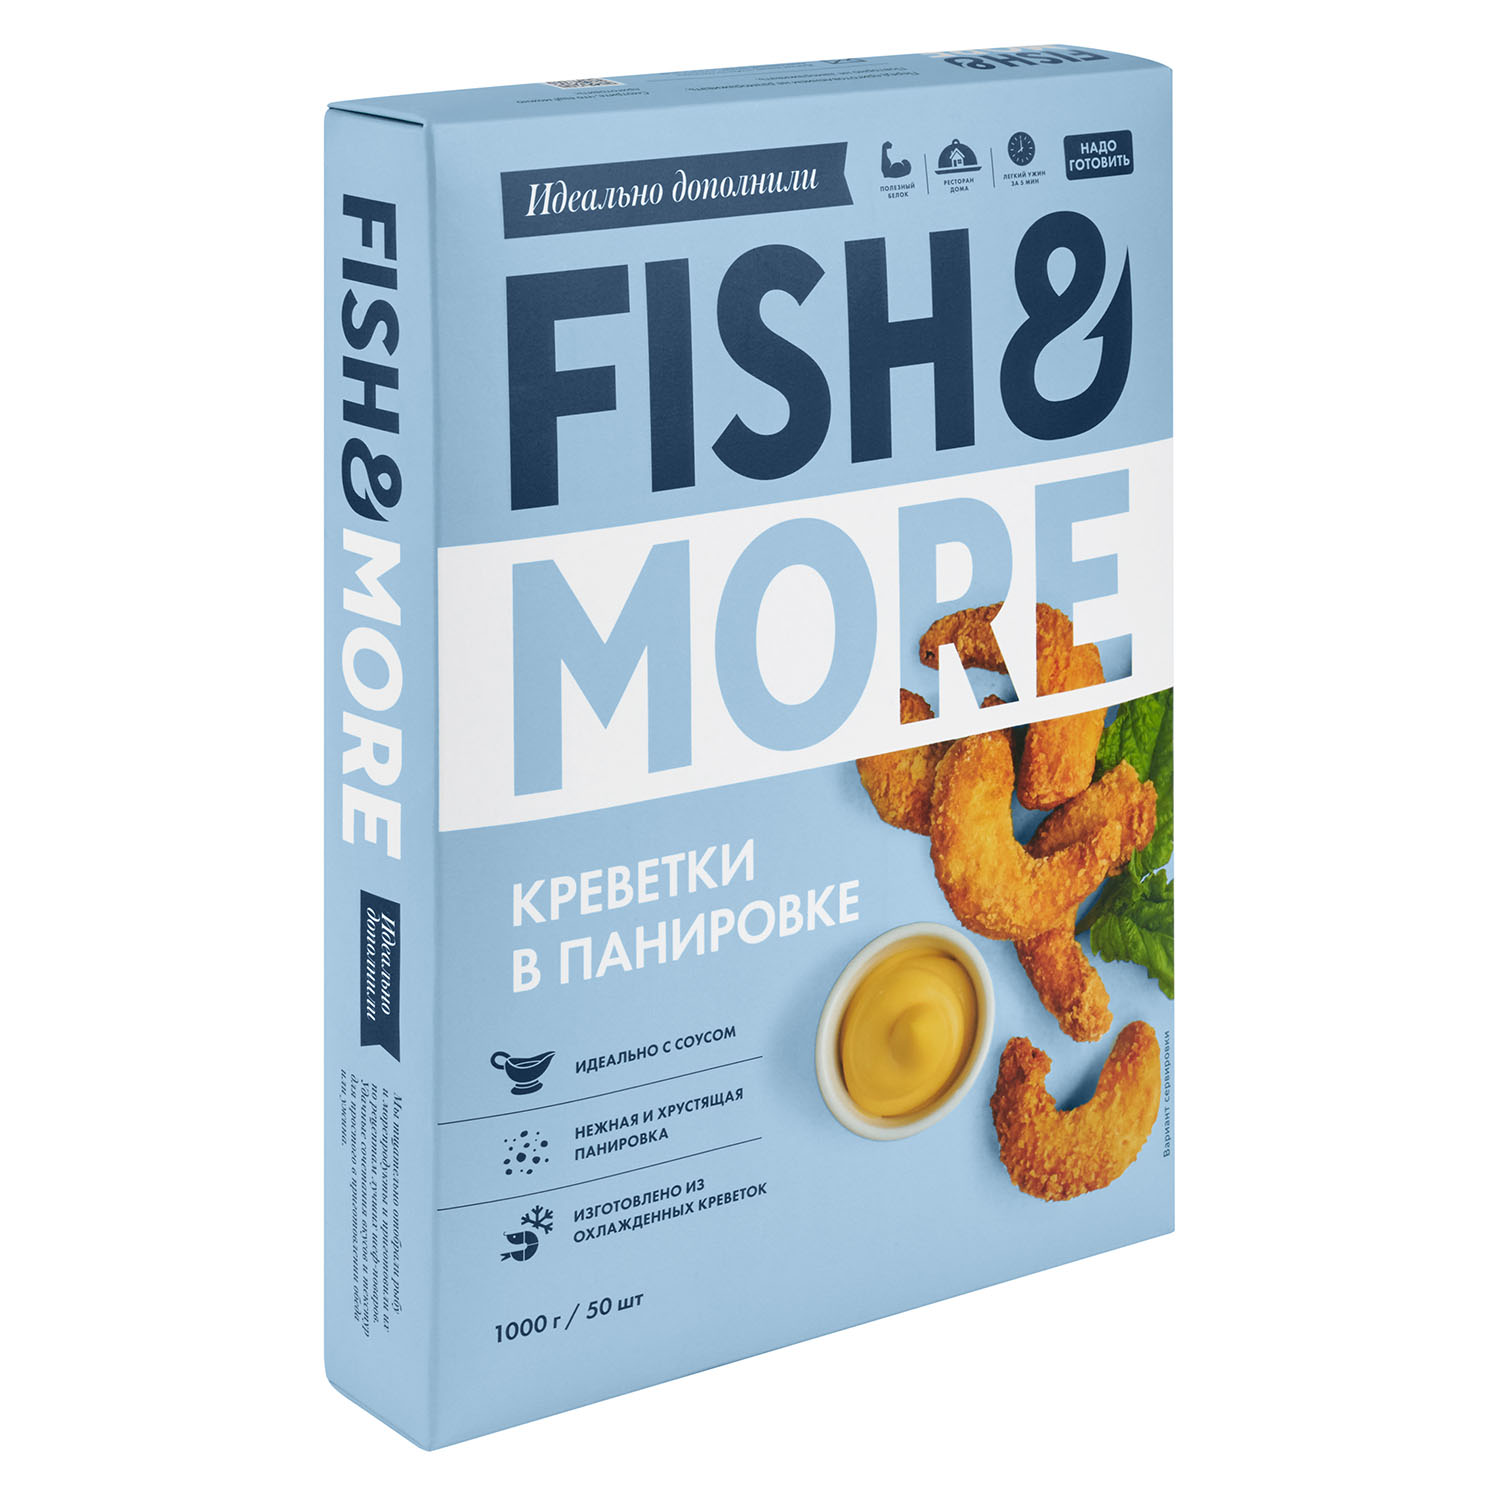 Fish&More Креветки в панировке королевские сыромороженые, 1000 г